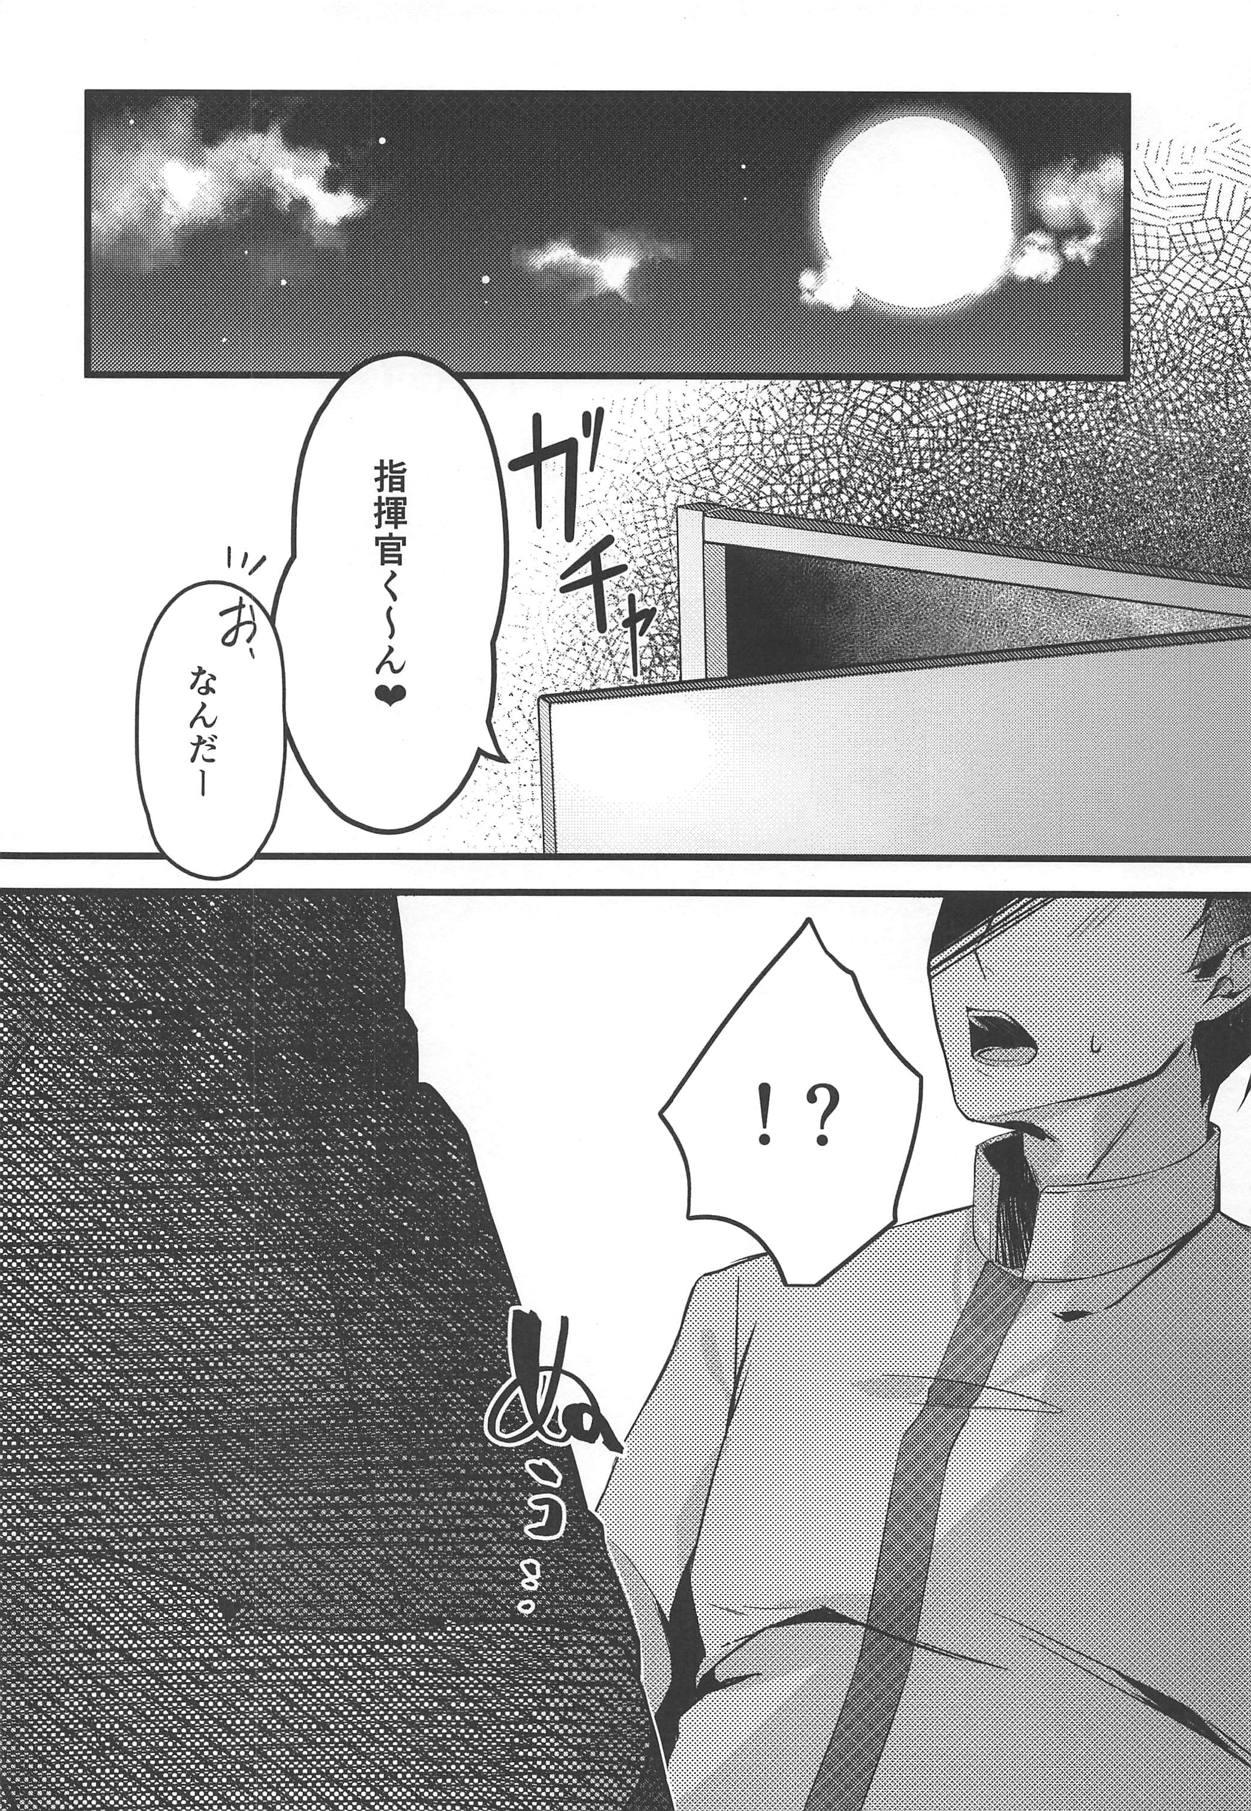 Futanari Watashi no Fuku ja Dame desu ka? - Azur lane Negao - Page 3